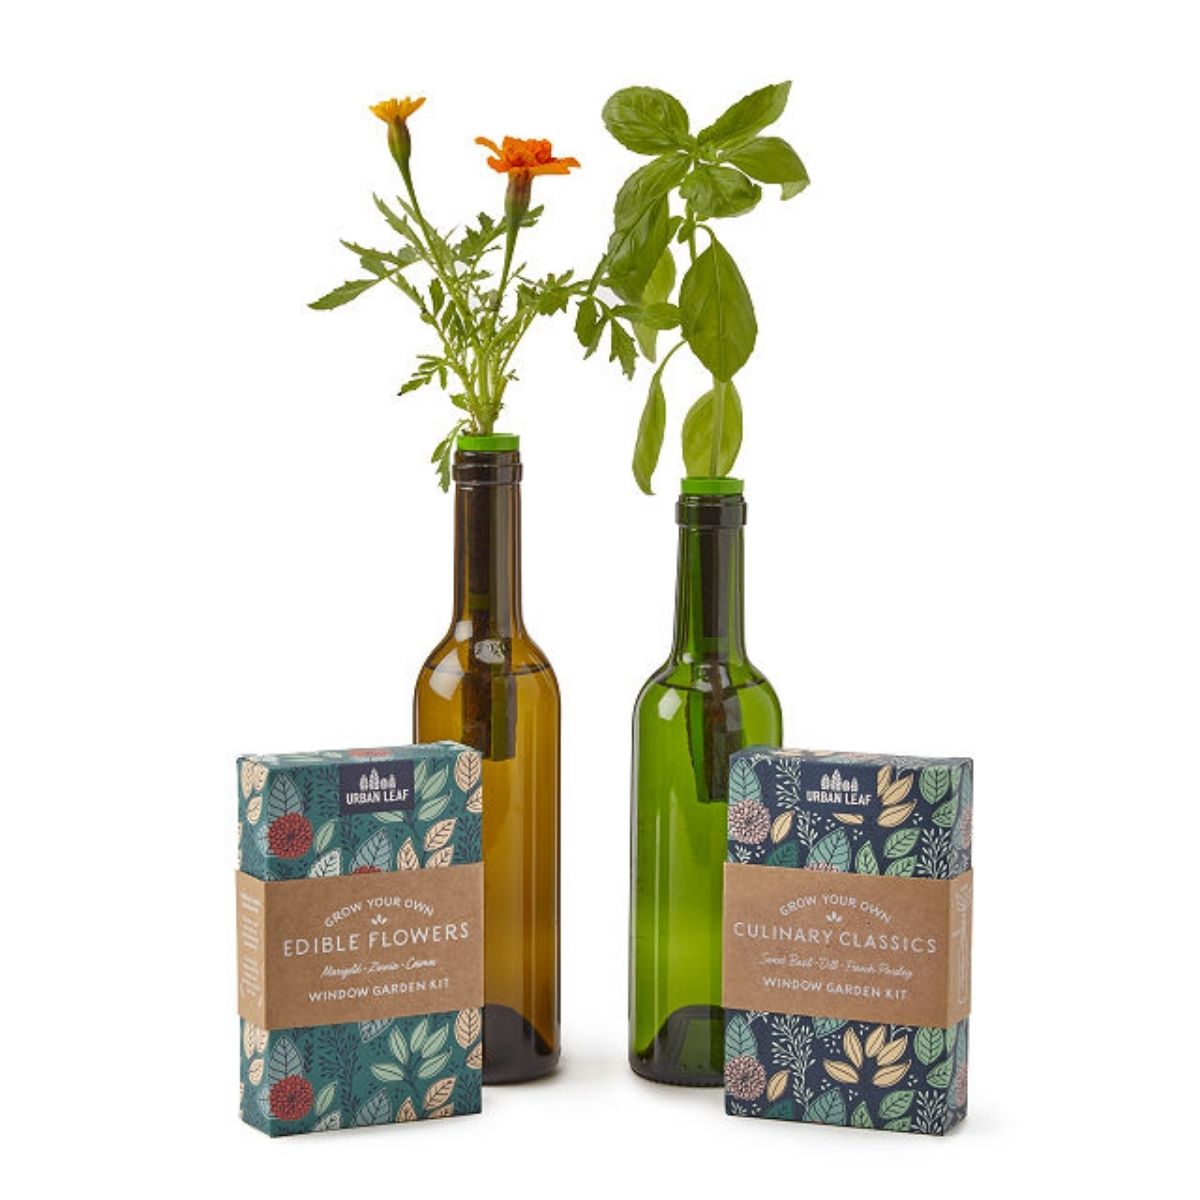 The Best Gifts for Wine Lovers Option: Bottle Stopper Garden Kit